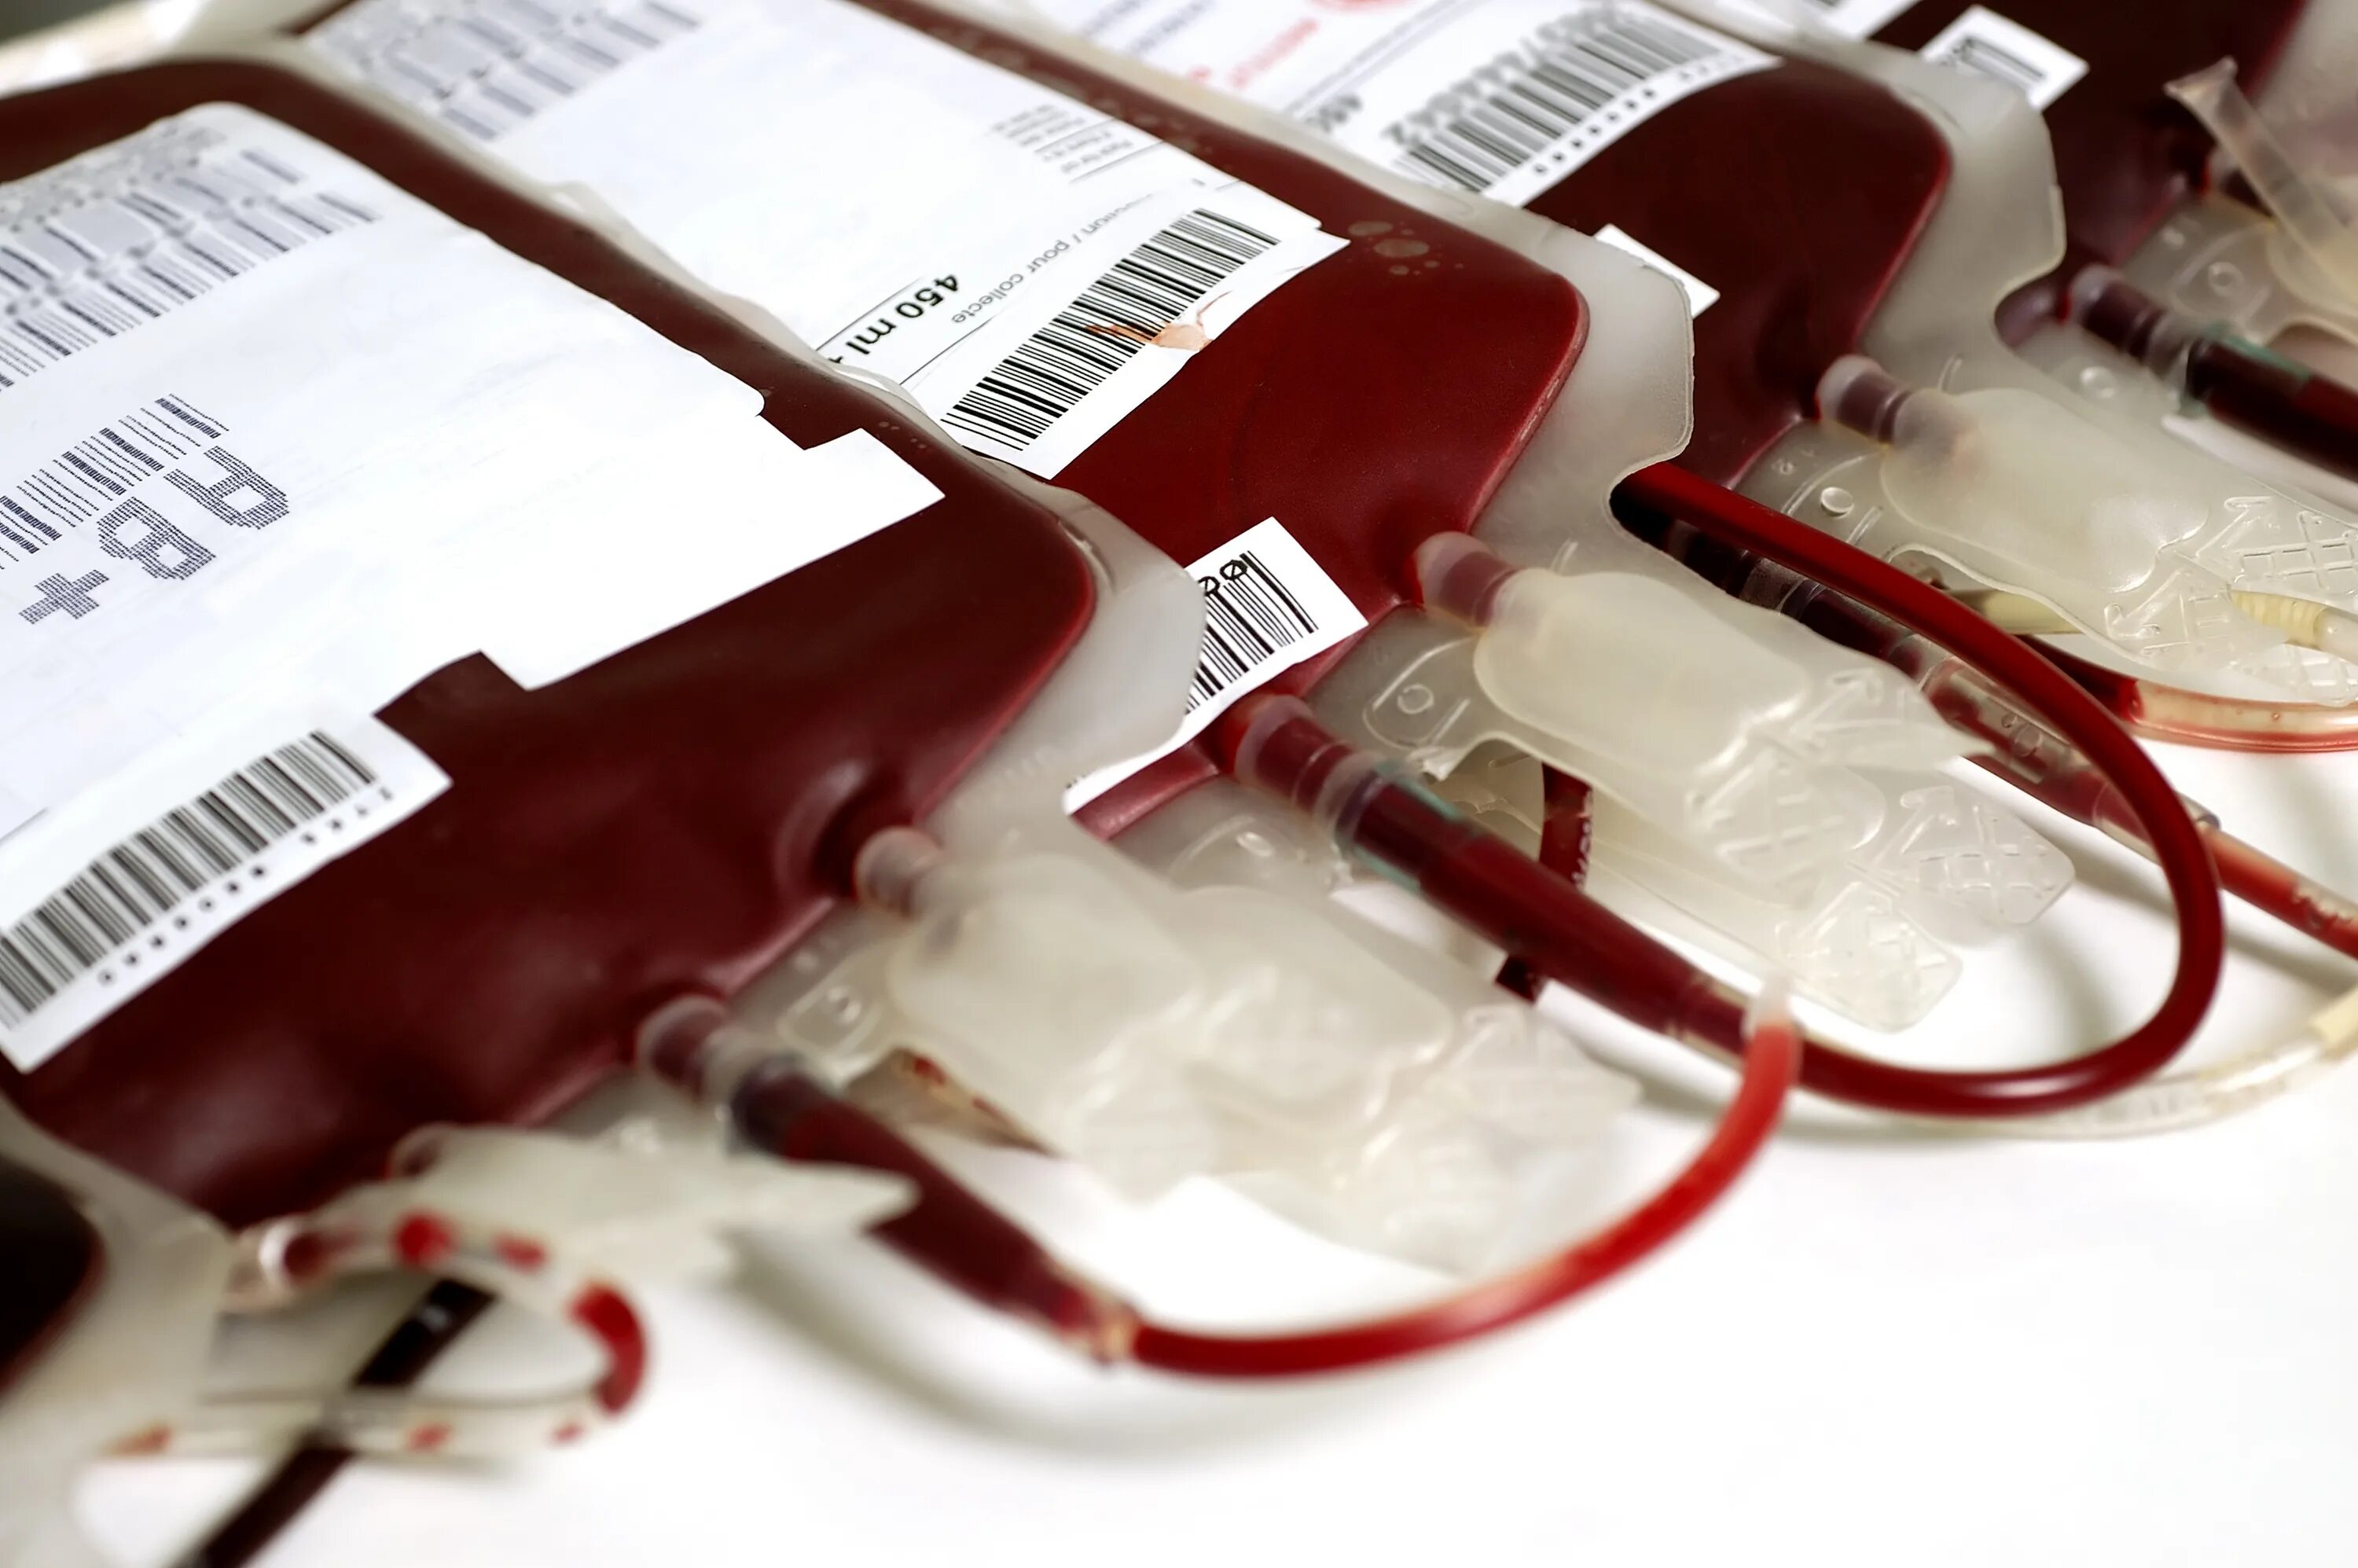 Гемотрансфузия плазмы крови. Контейнер для переливания крови. История донорства